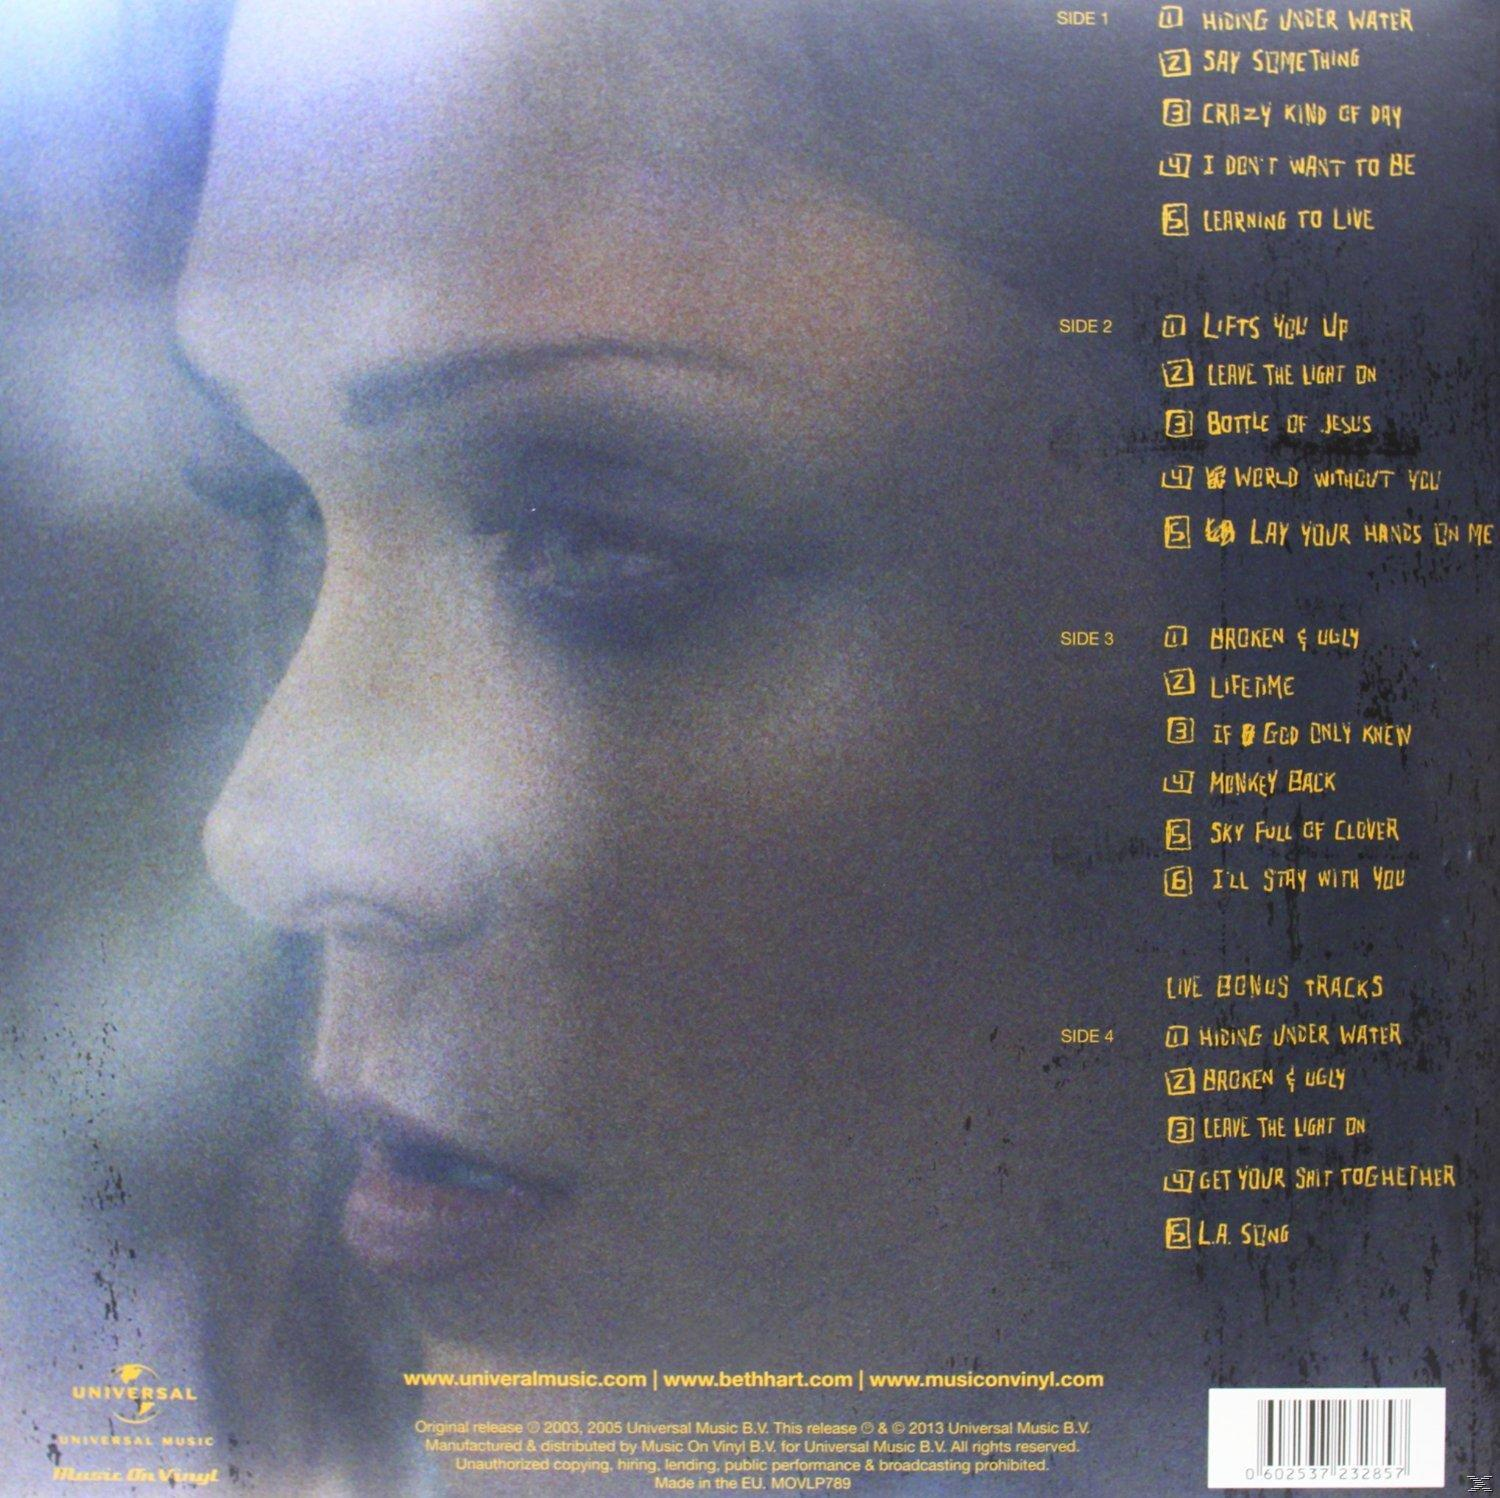 Beth Hart - Leave Light The (Vinyl) On 